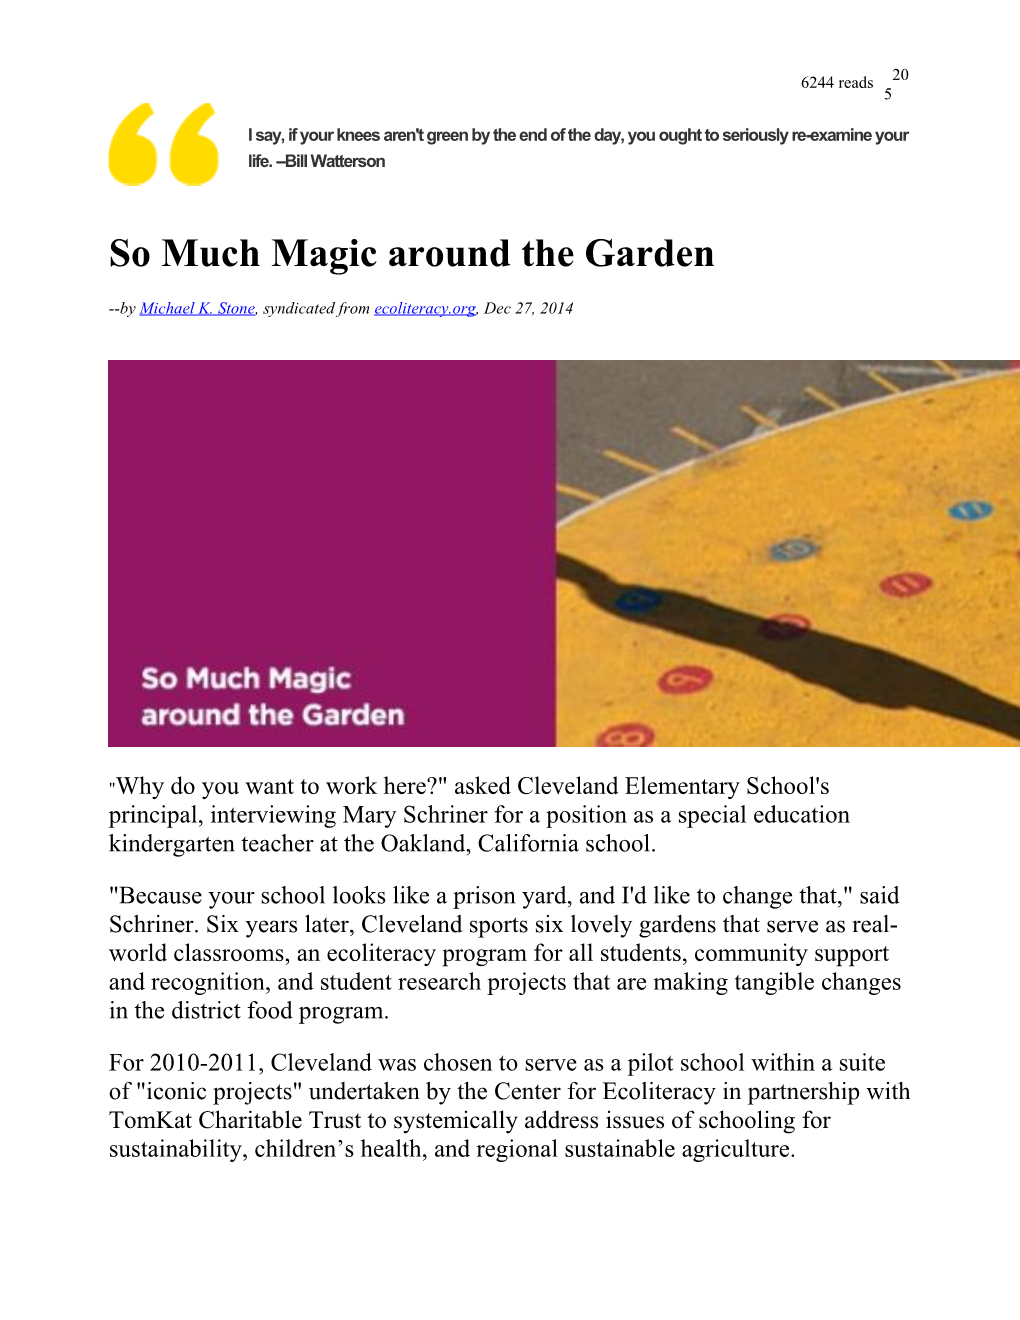 So Much Magic Around the Garden